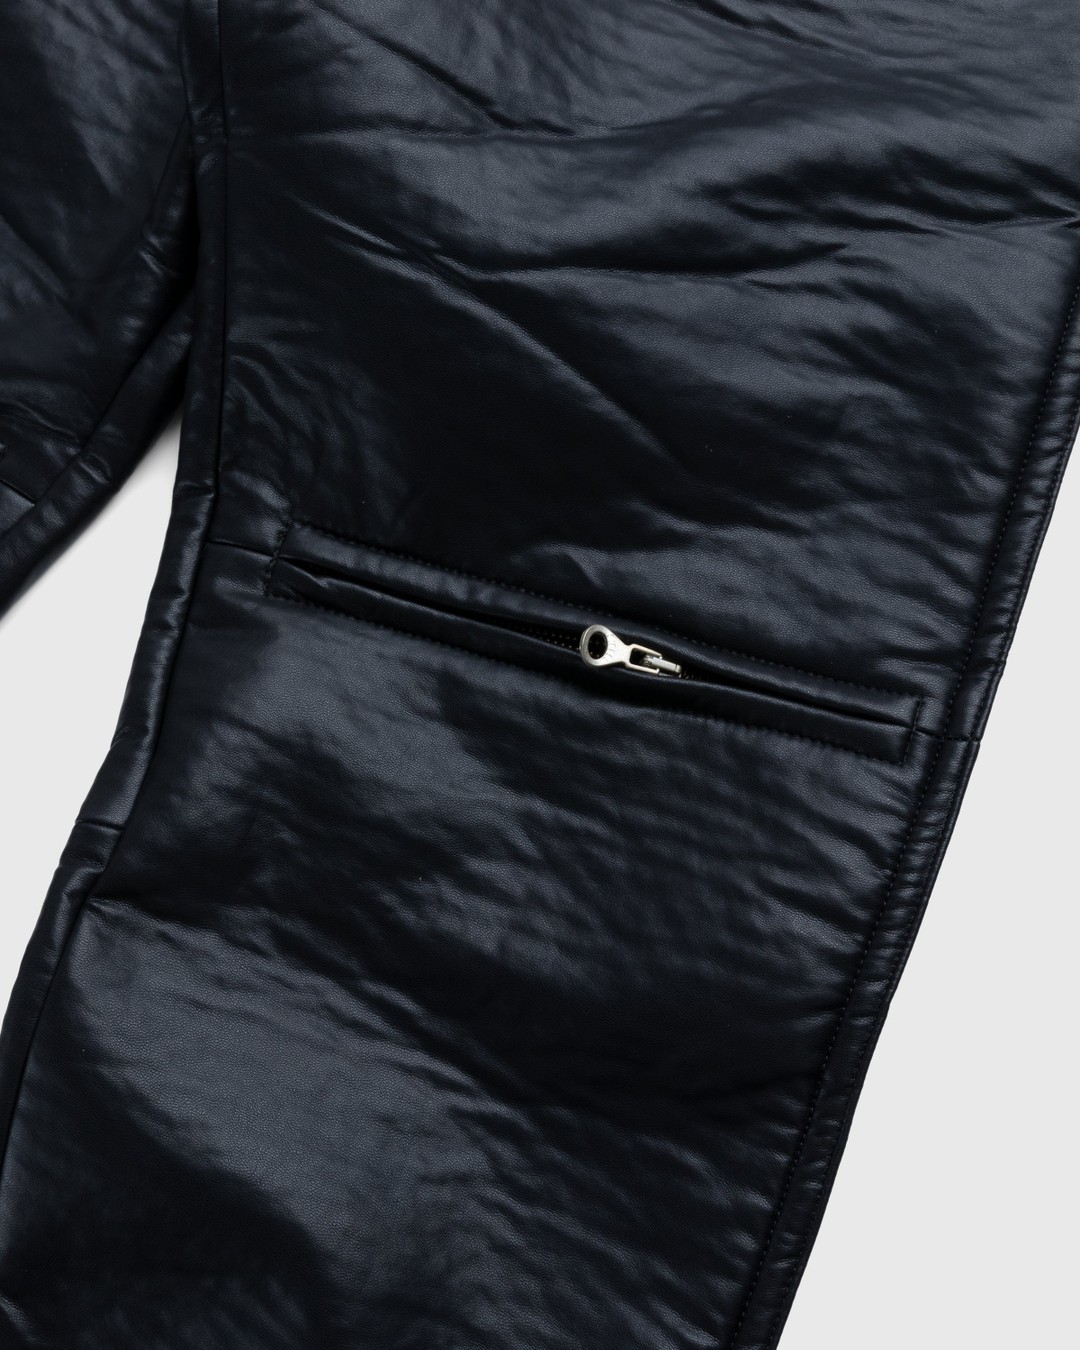 Diesel – Cirio Biker Trousers Black - Trousers - Black - Image 4